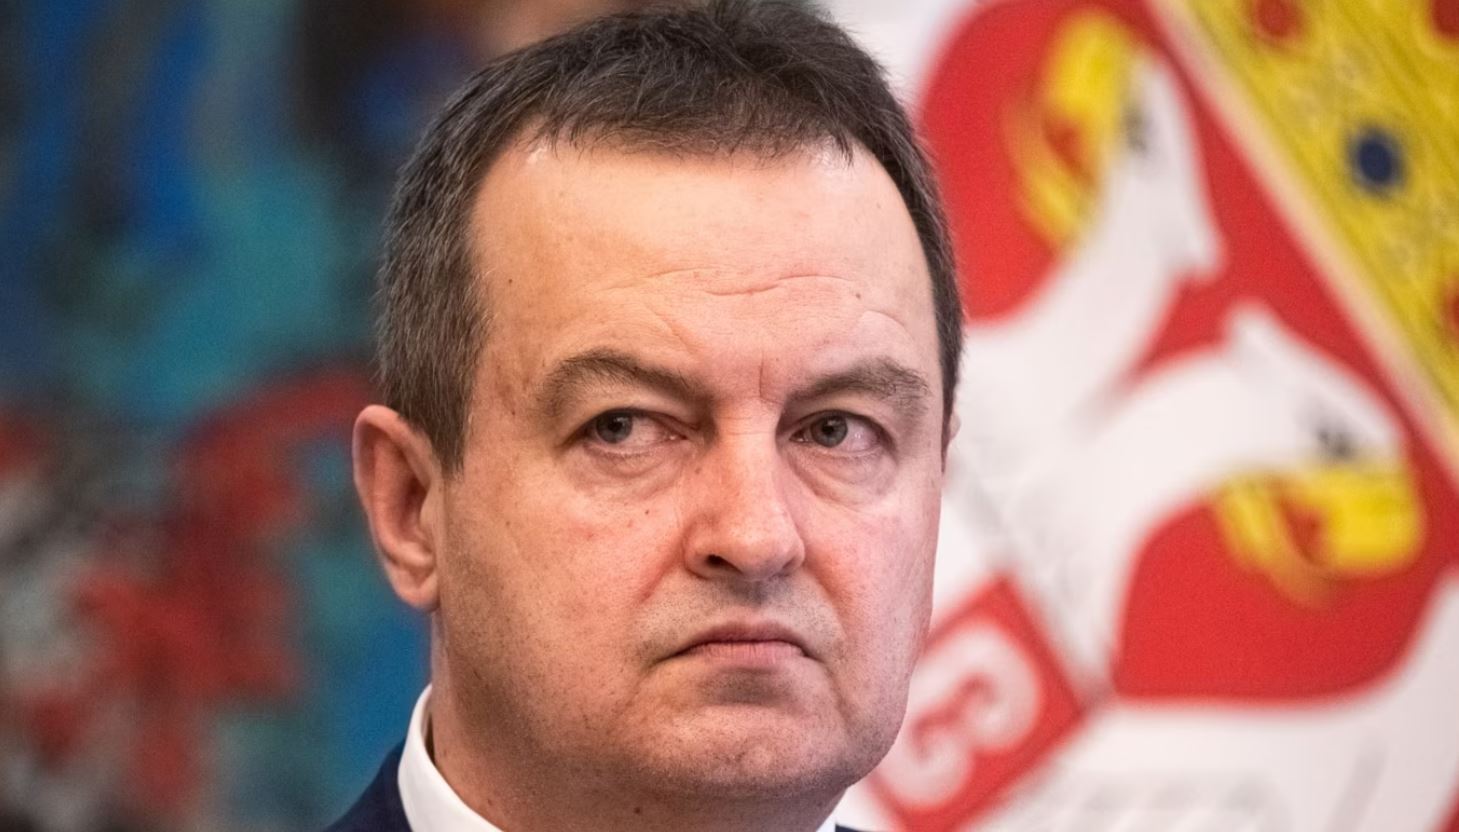 Ministri i Jashtëm i Serbisë akuzon autoritetet e Kosovës se po krijojnë krizë: Është shumë e qartë, një situatë e vjetër është në horizont